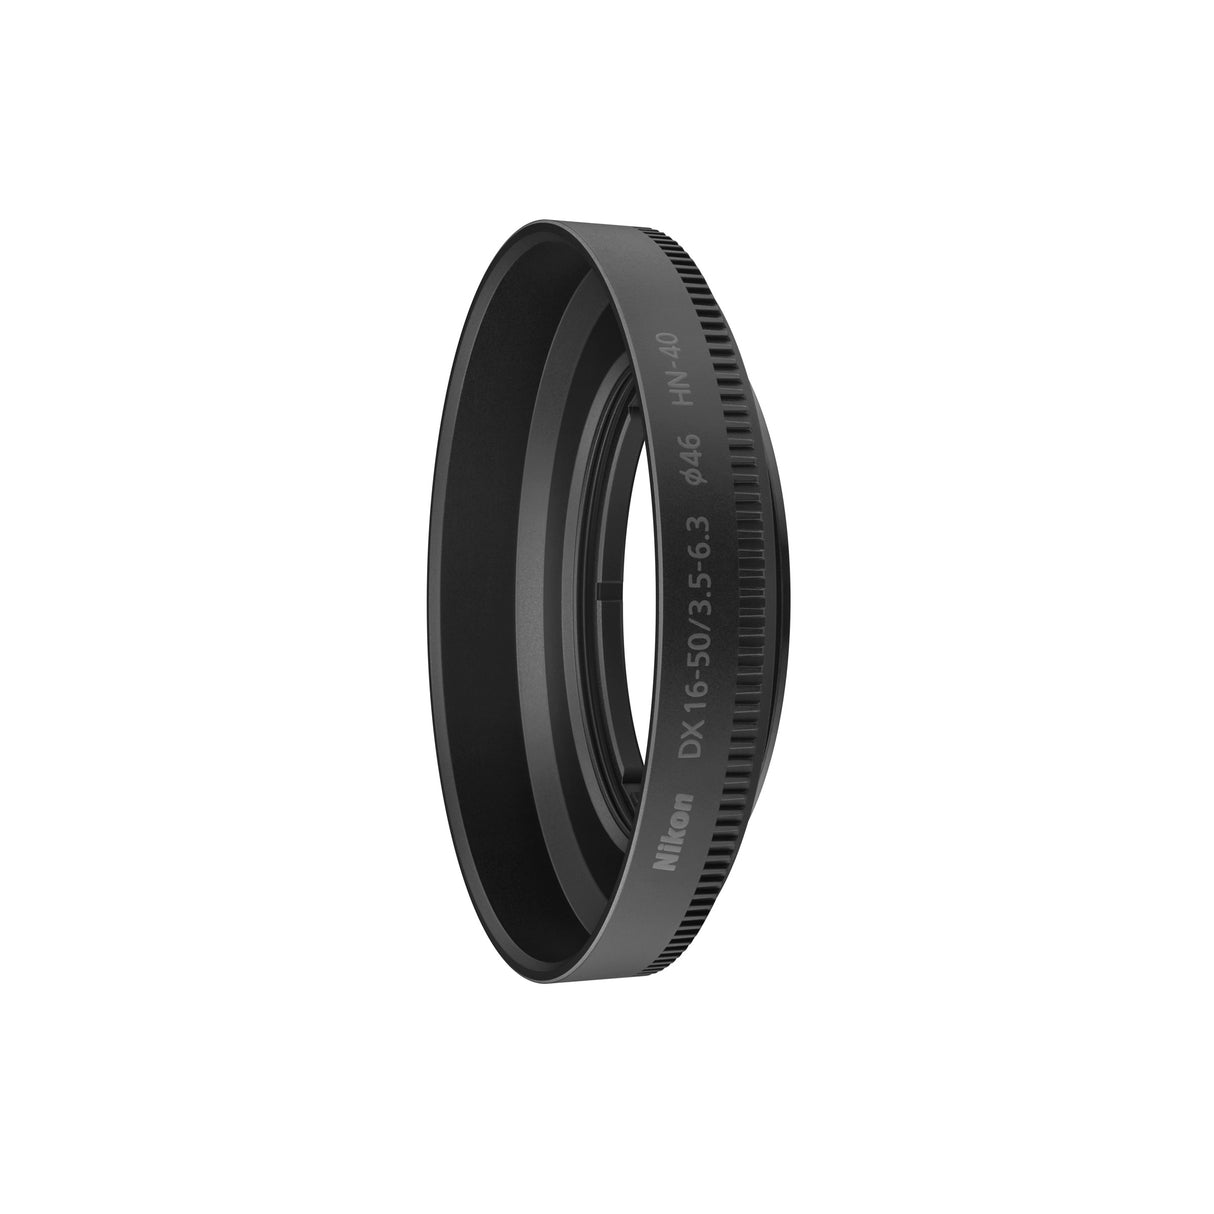 NIKKOR Z DX 16-50mm f/3.5-6.3 VR Silver Edition Lens